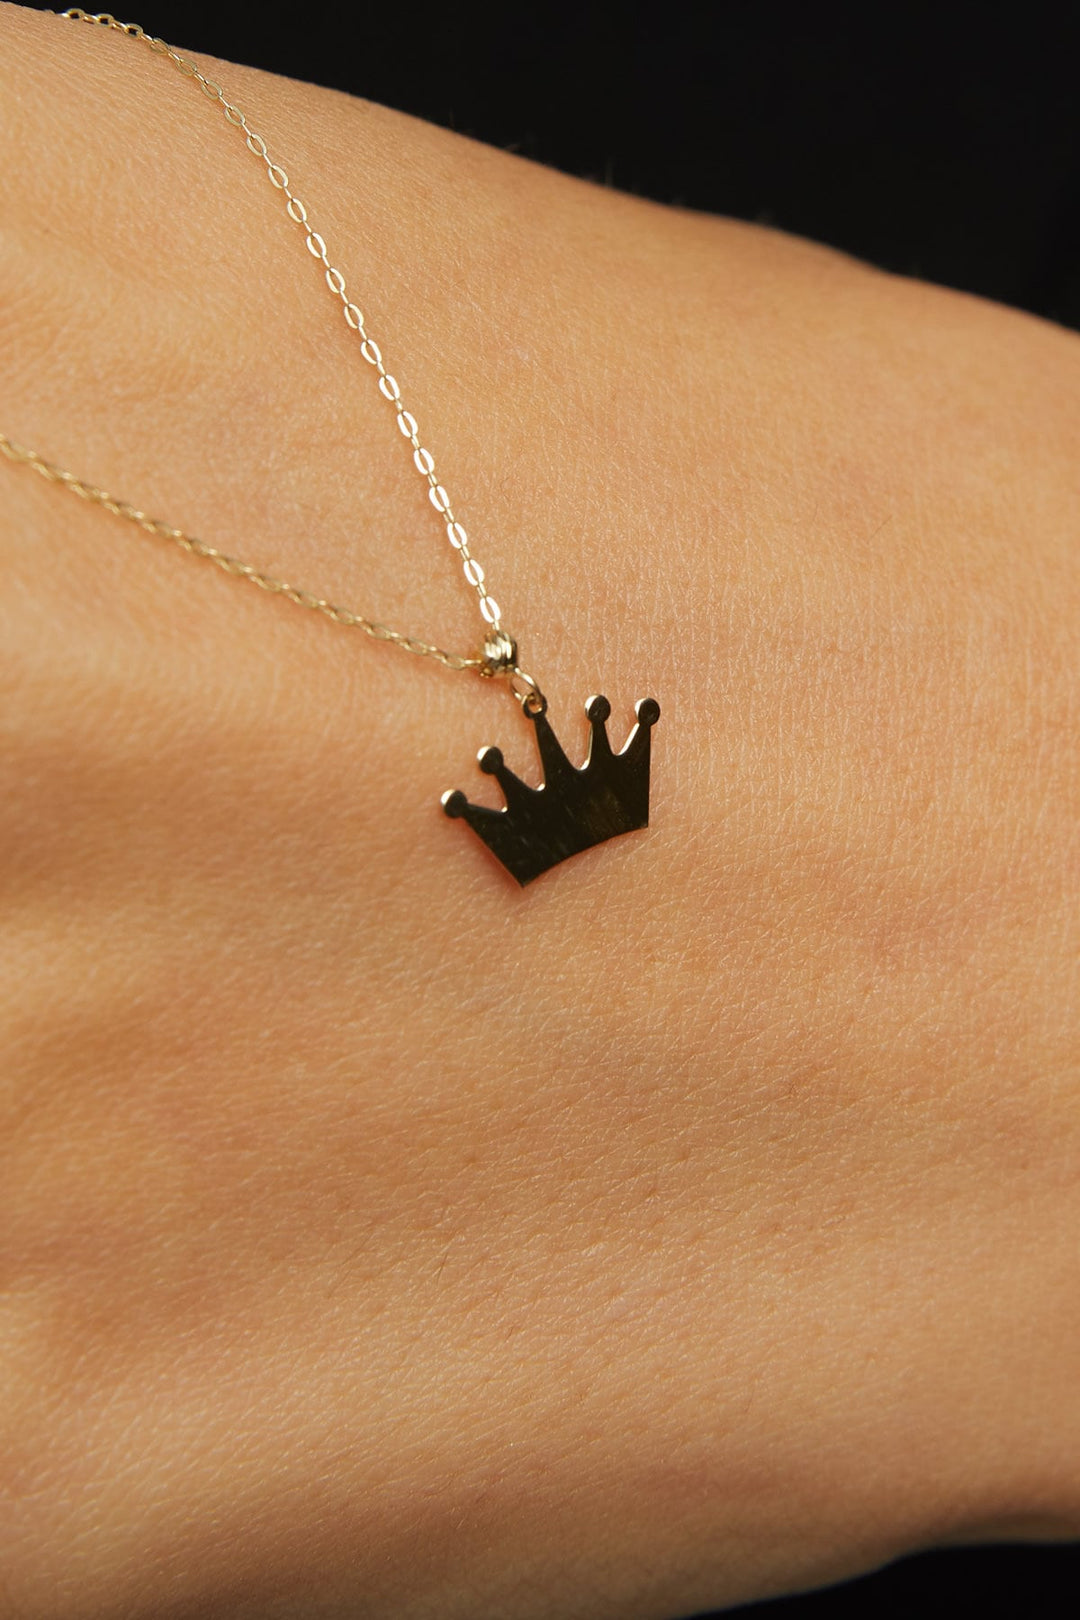 14 Carat King Crown Necklace - krlkol92